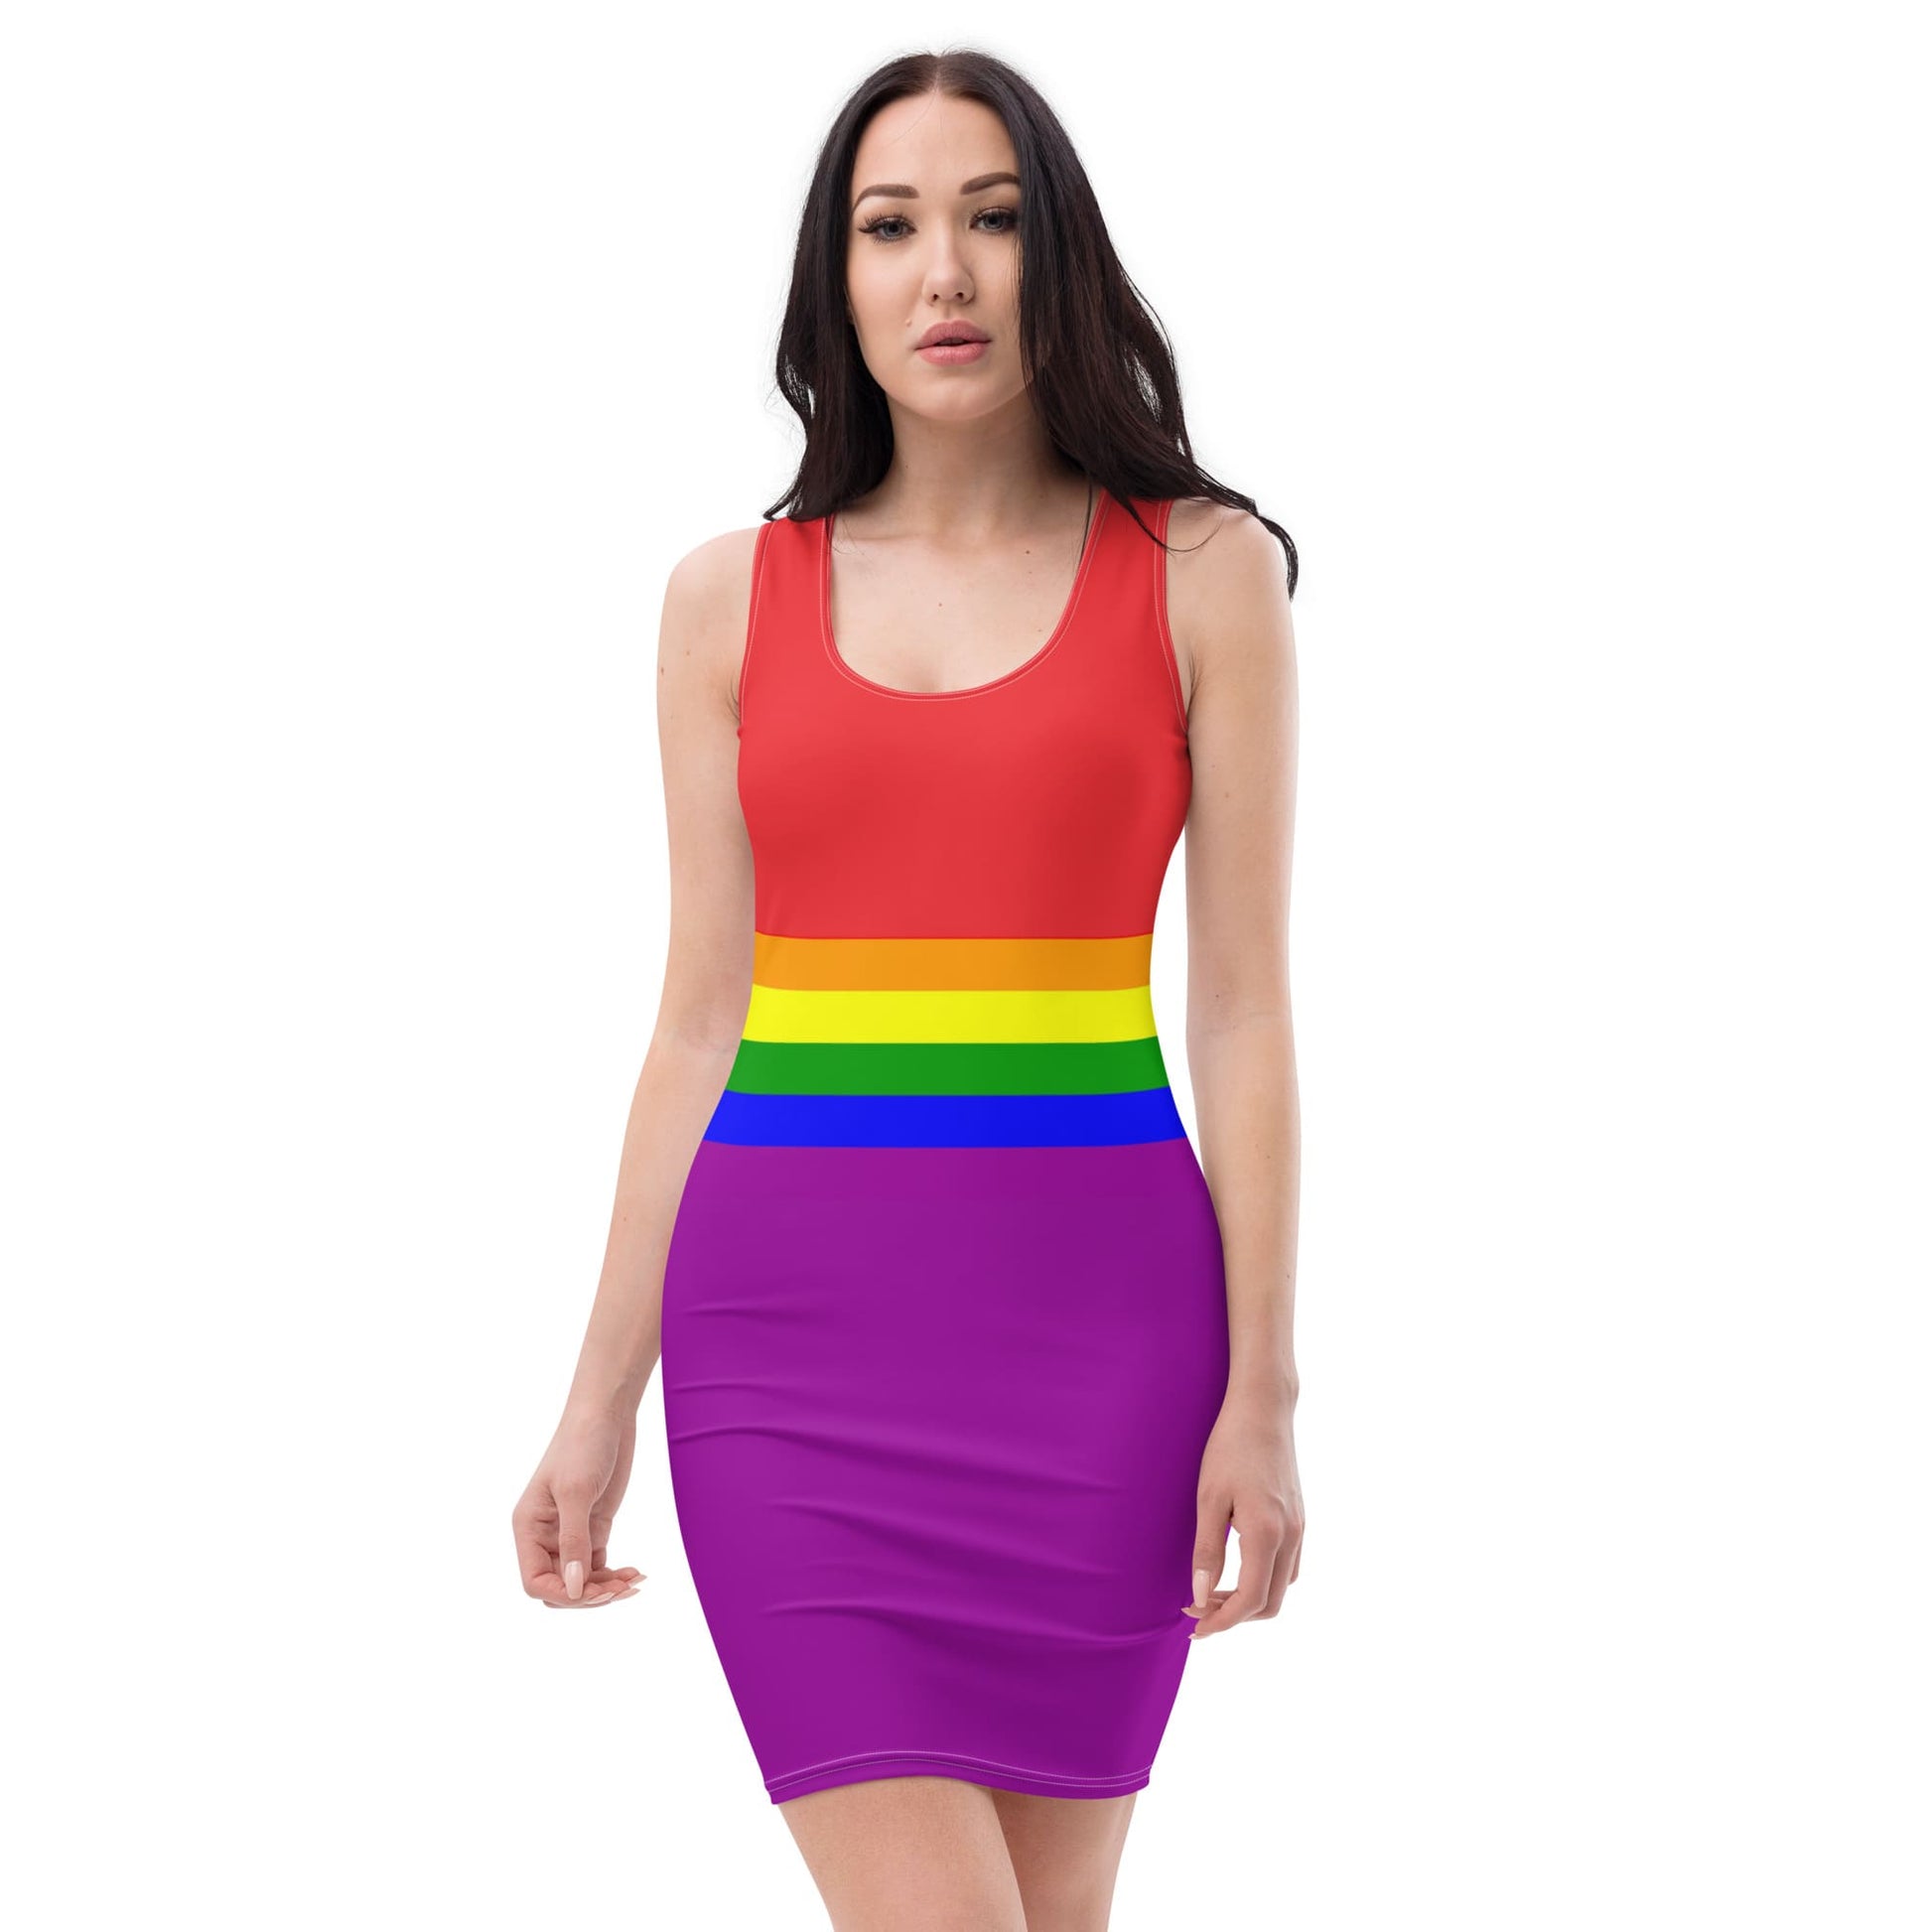 LGBT pride dress, front